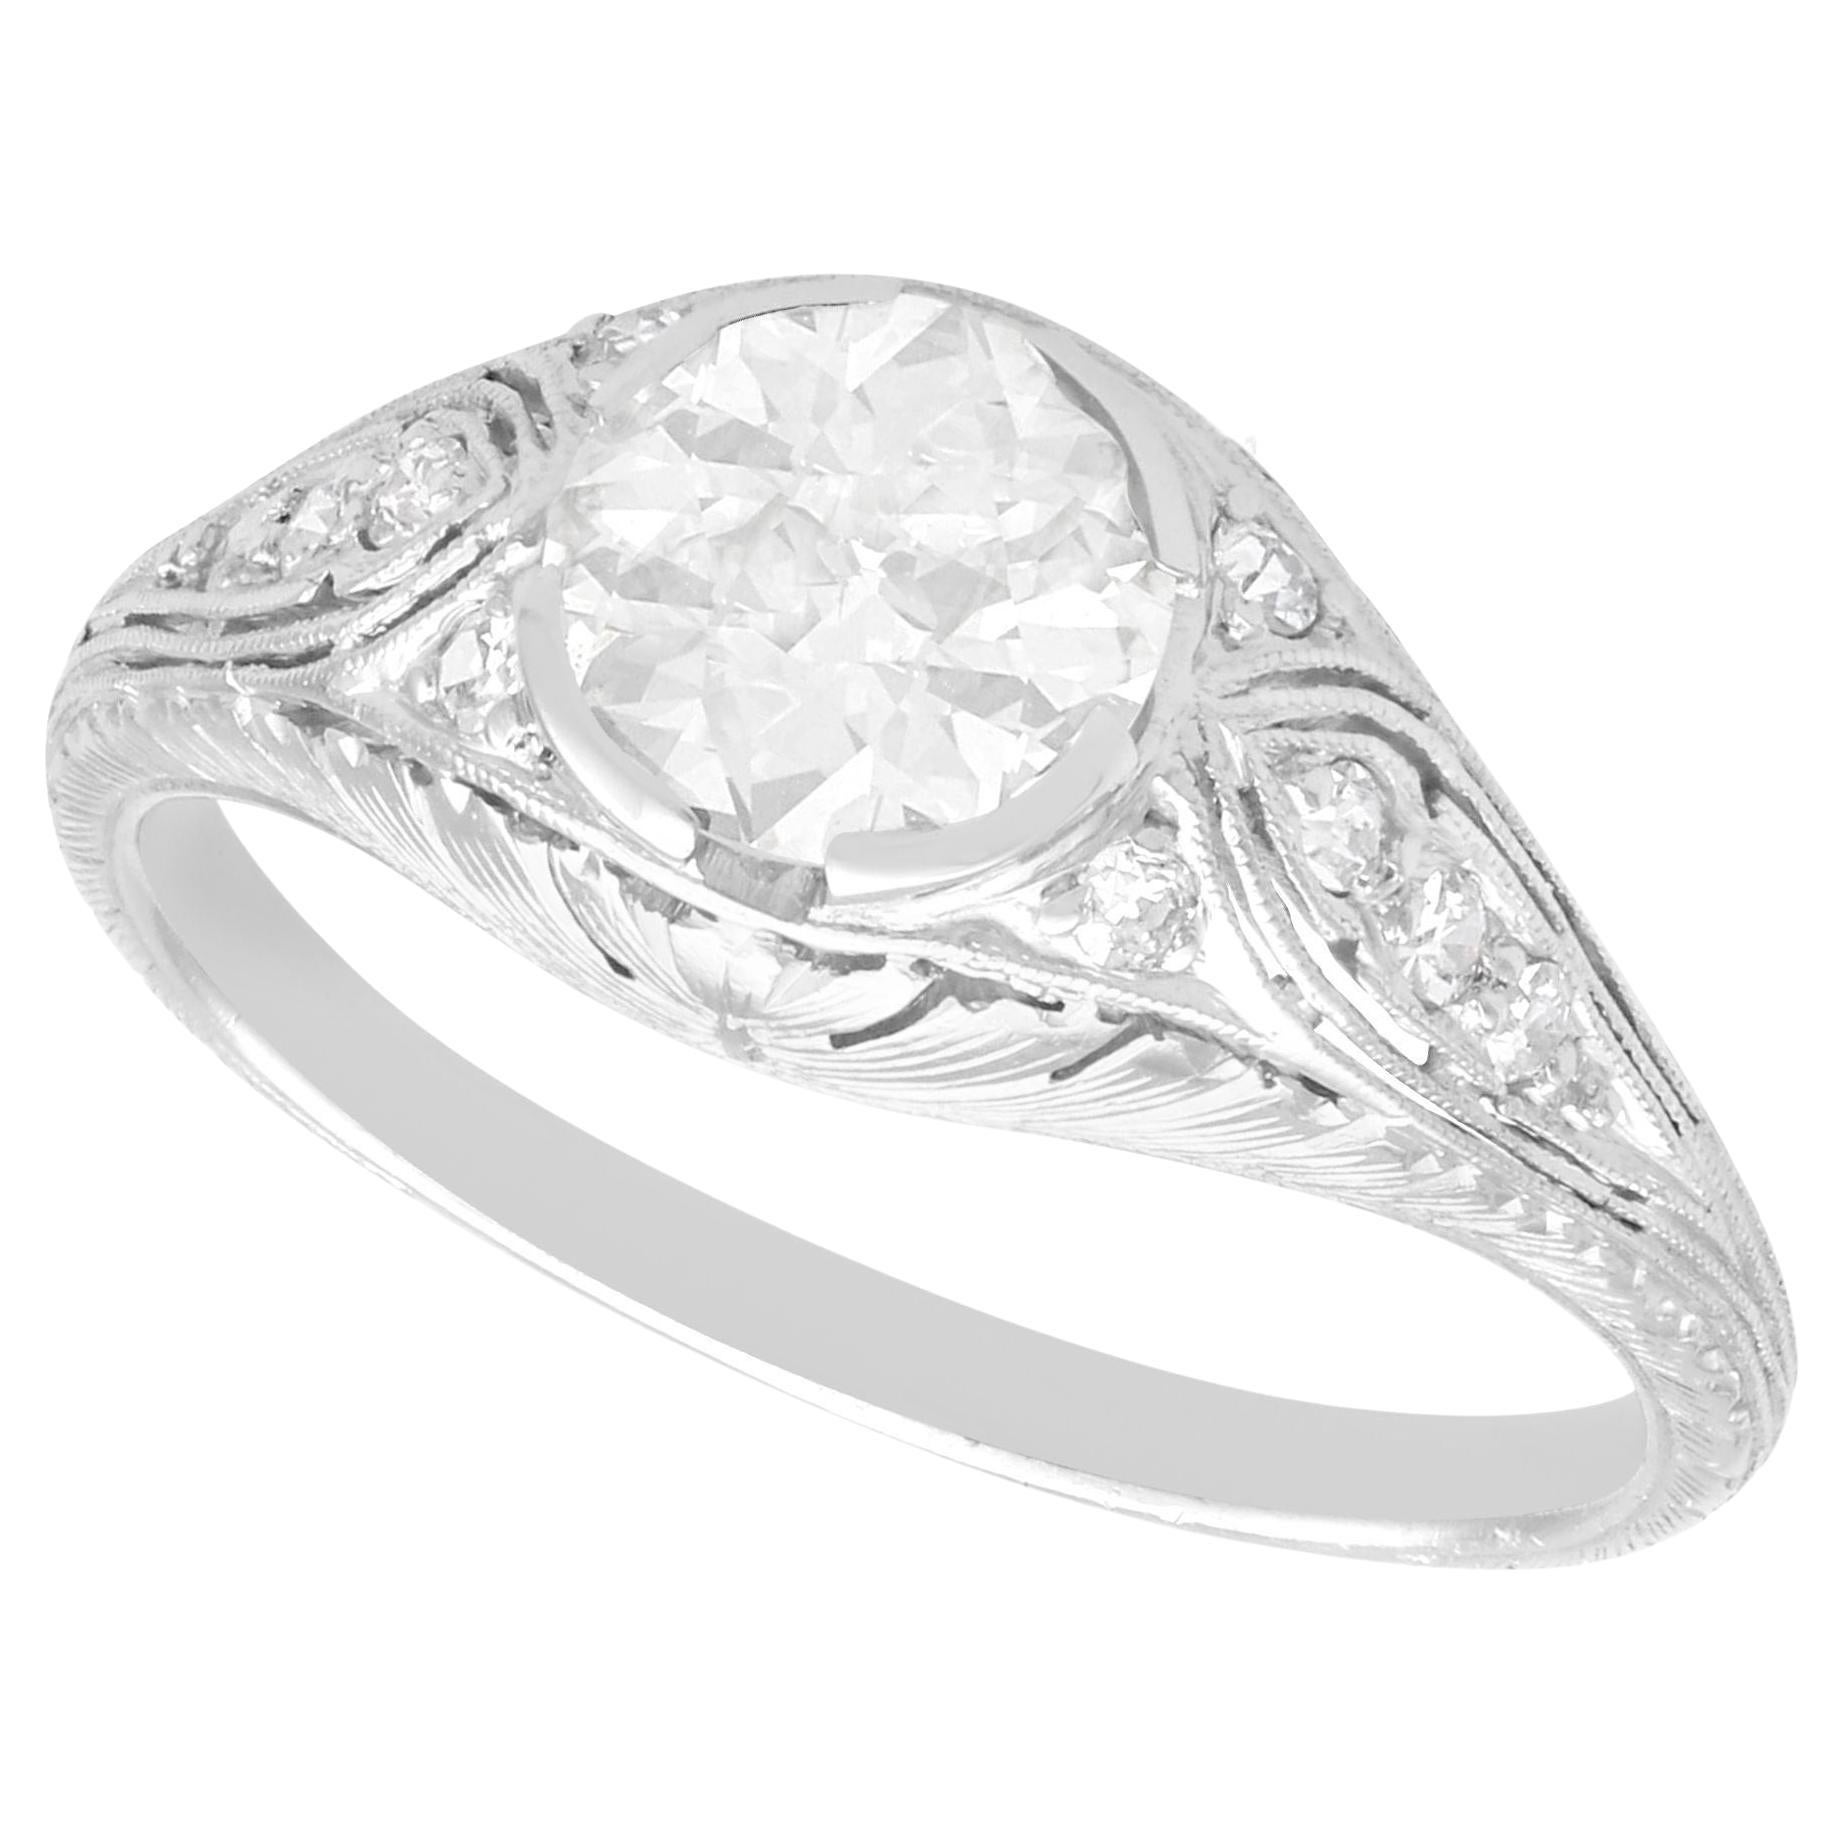 Antique 1.12 Carat Diamond and Platinum Solitaire Ring, Circa 1925